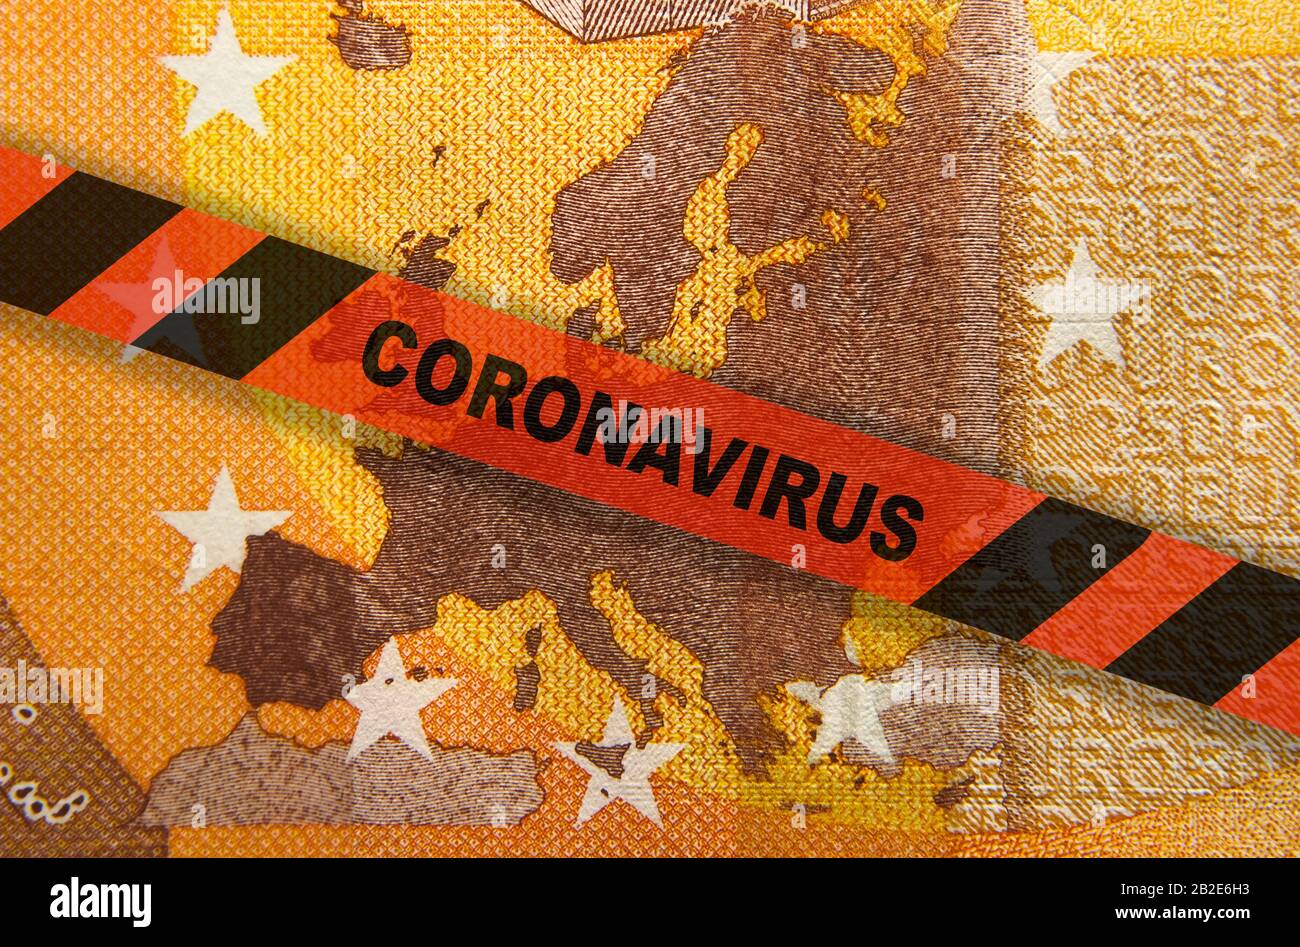 Quarantaine du coronavirus en Europe. Concept. Billet de 50 euros avec carte européenne et ruban jaune. Economie et entreprises touchées par l'épidémie de virus corona. Banque D'Images